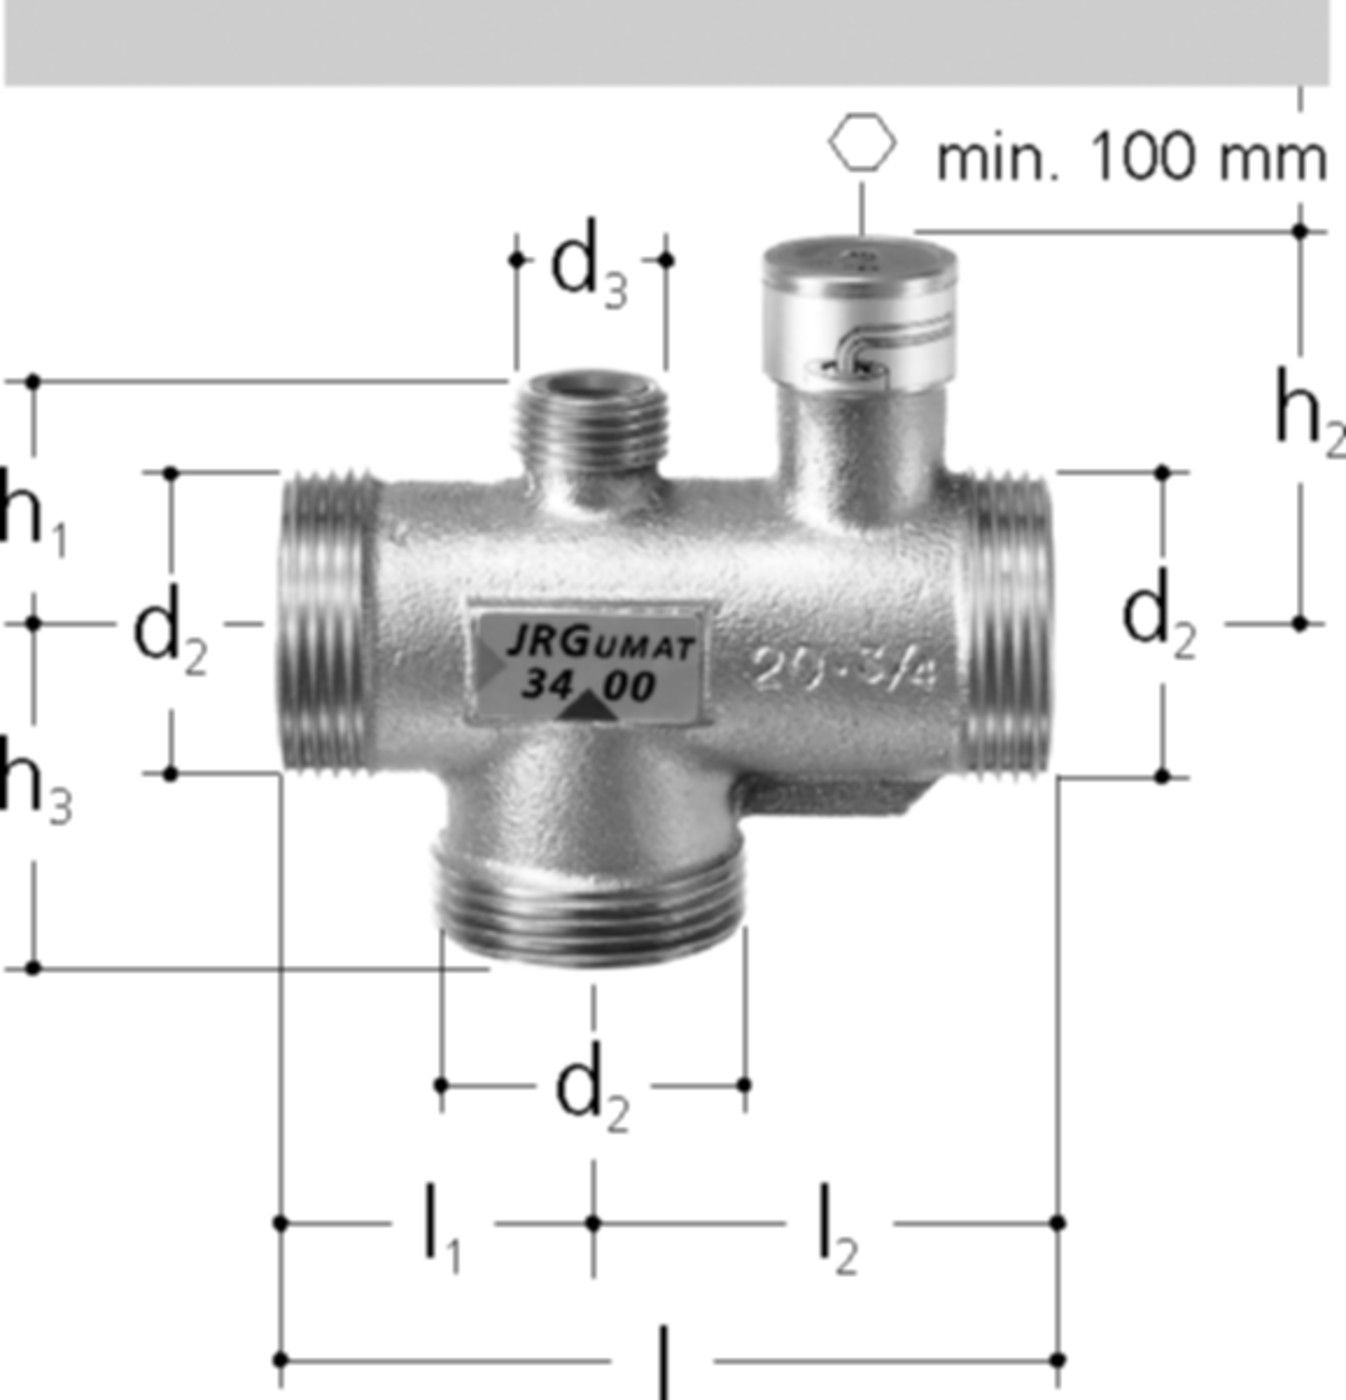 JRGUMAT Thermomischer PN 10 1/2" DN 15 40°C 3400.912 - JRG Armaturen